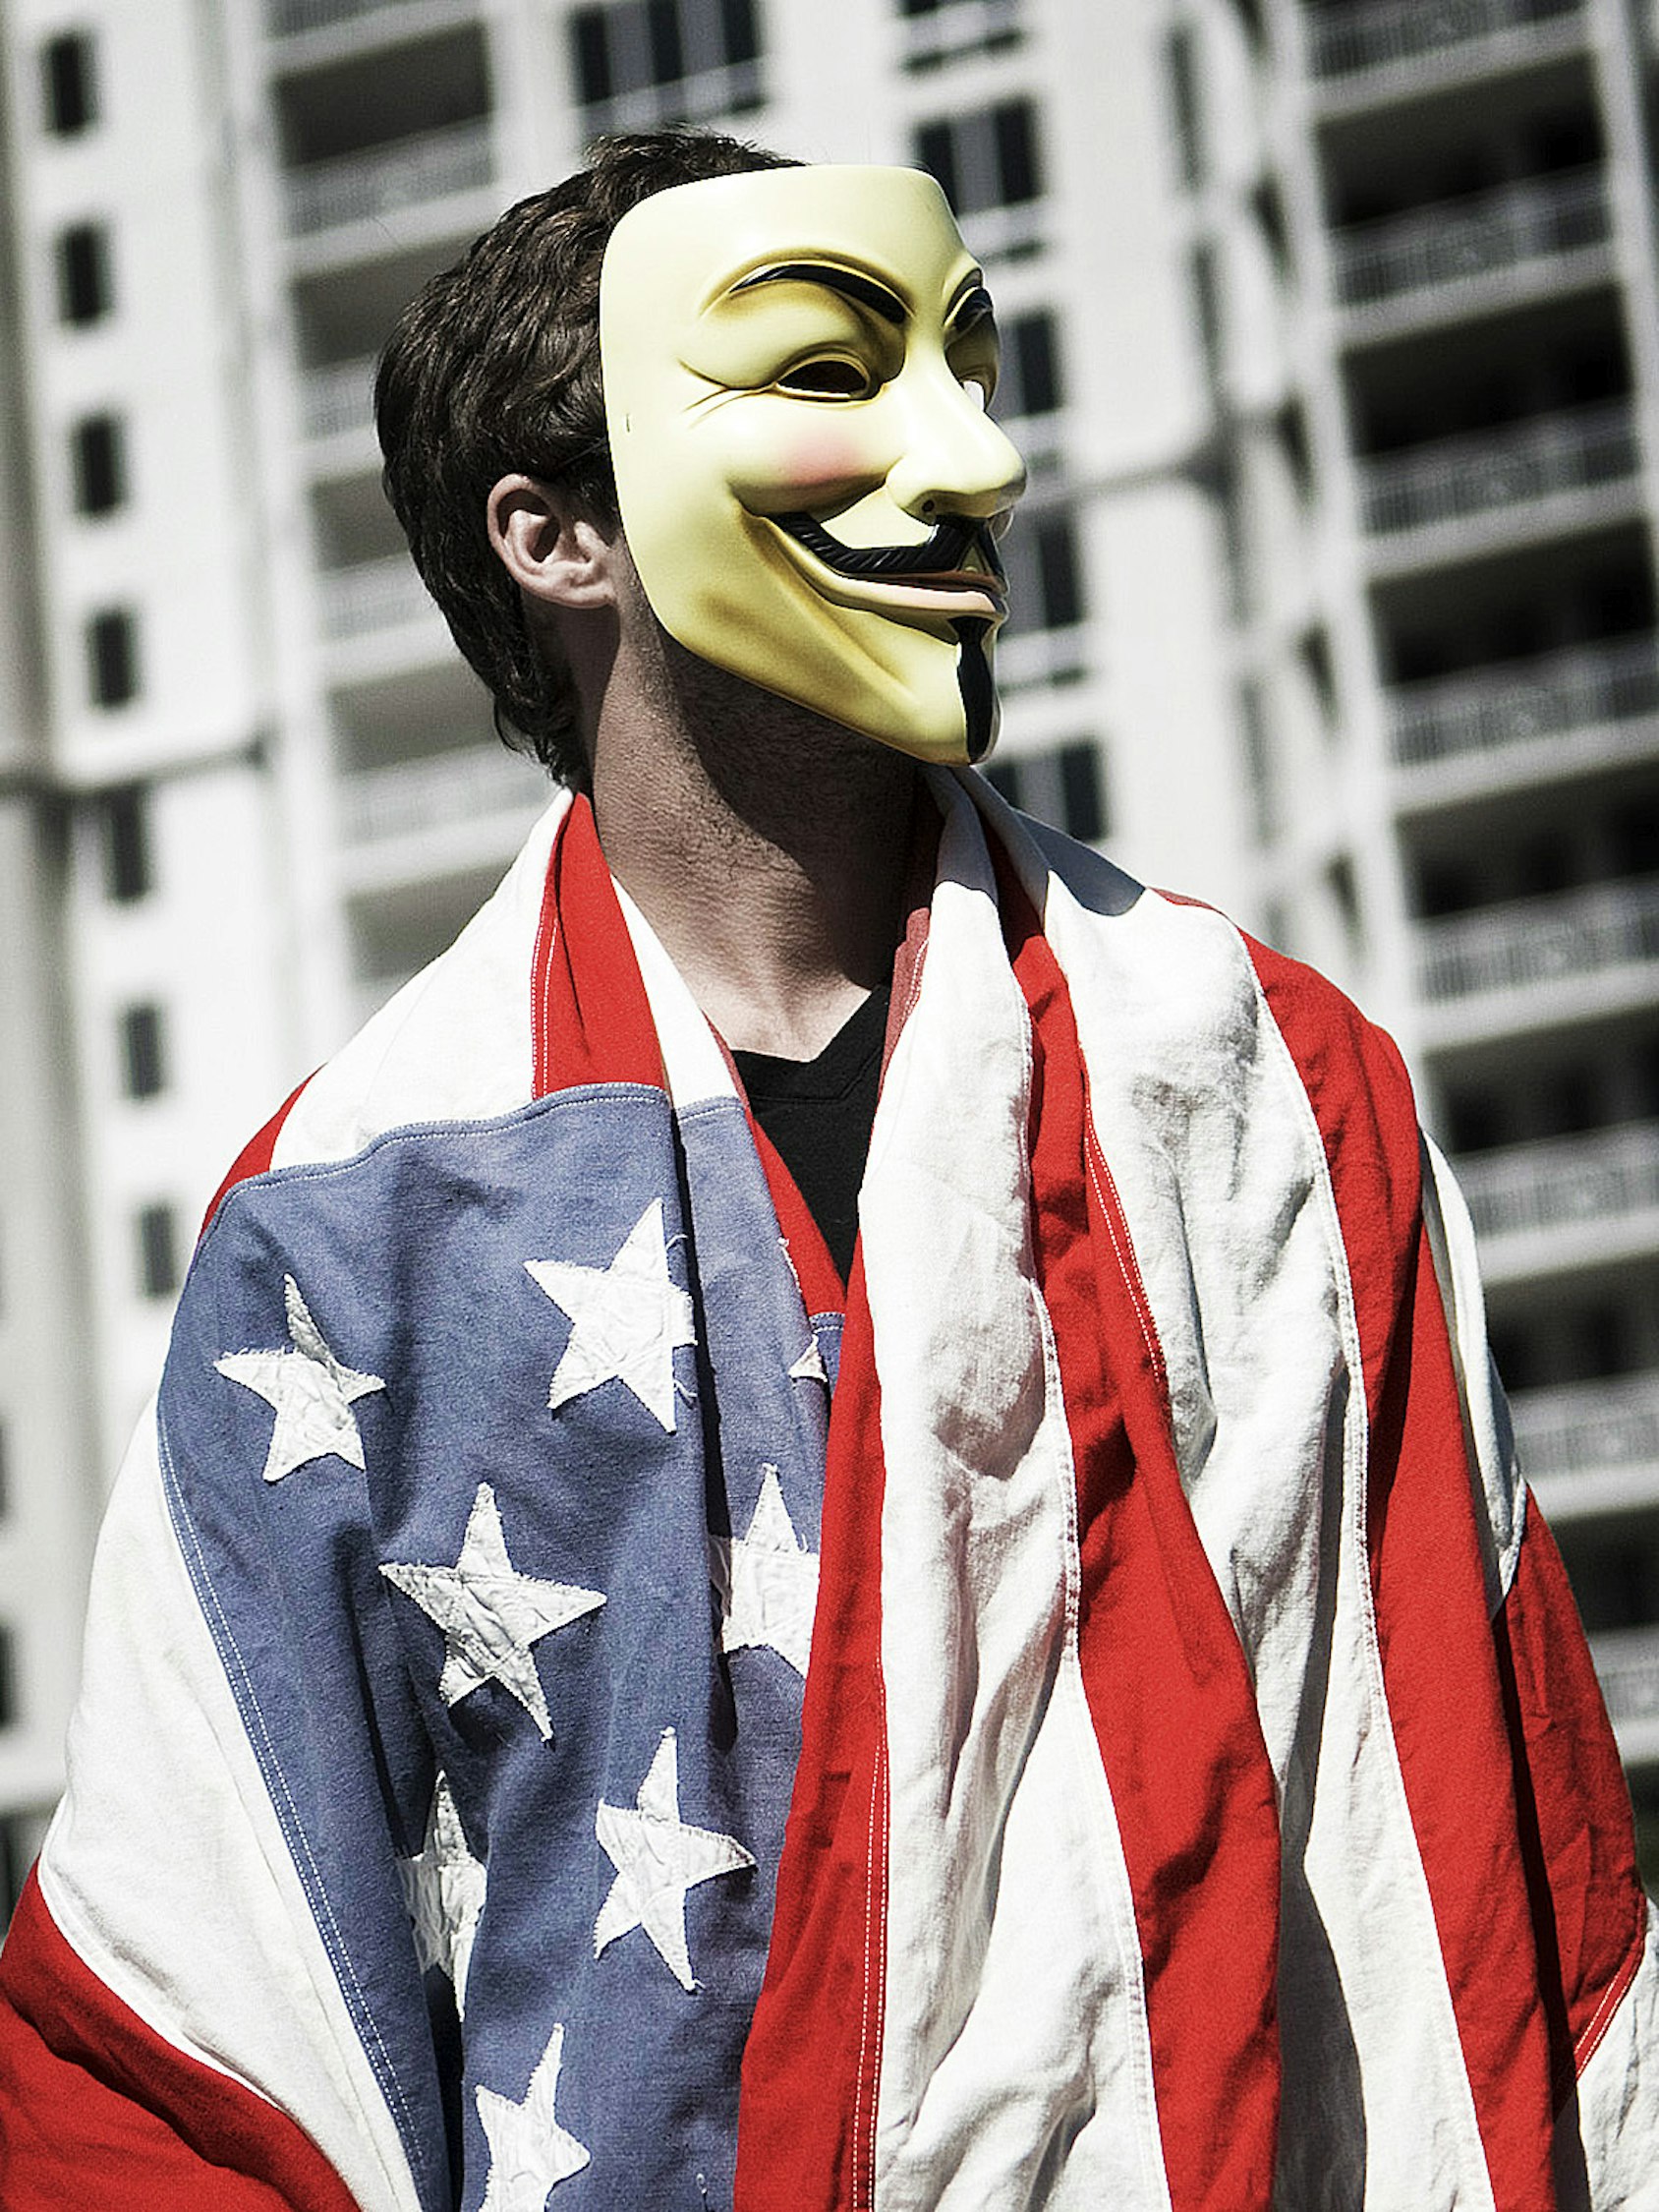 Человек в маске. Американец в маске. Американская маска. Популярные маски. Человек в маске шоу